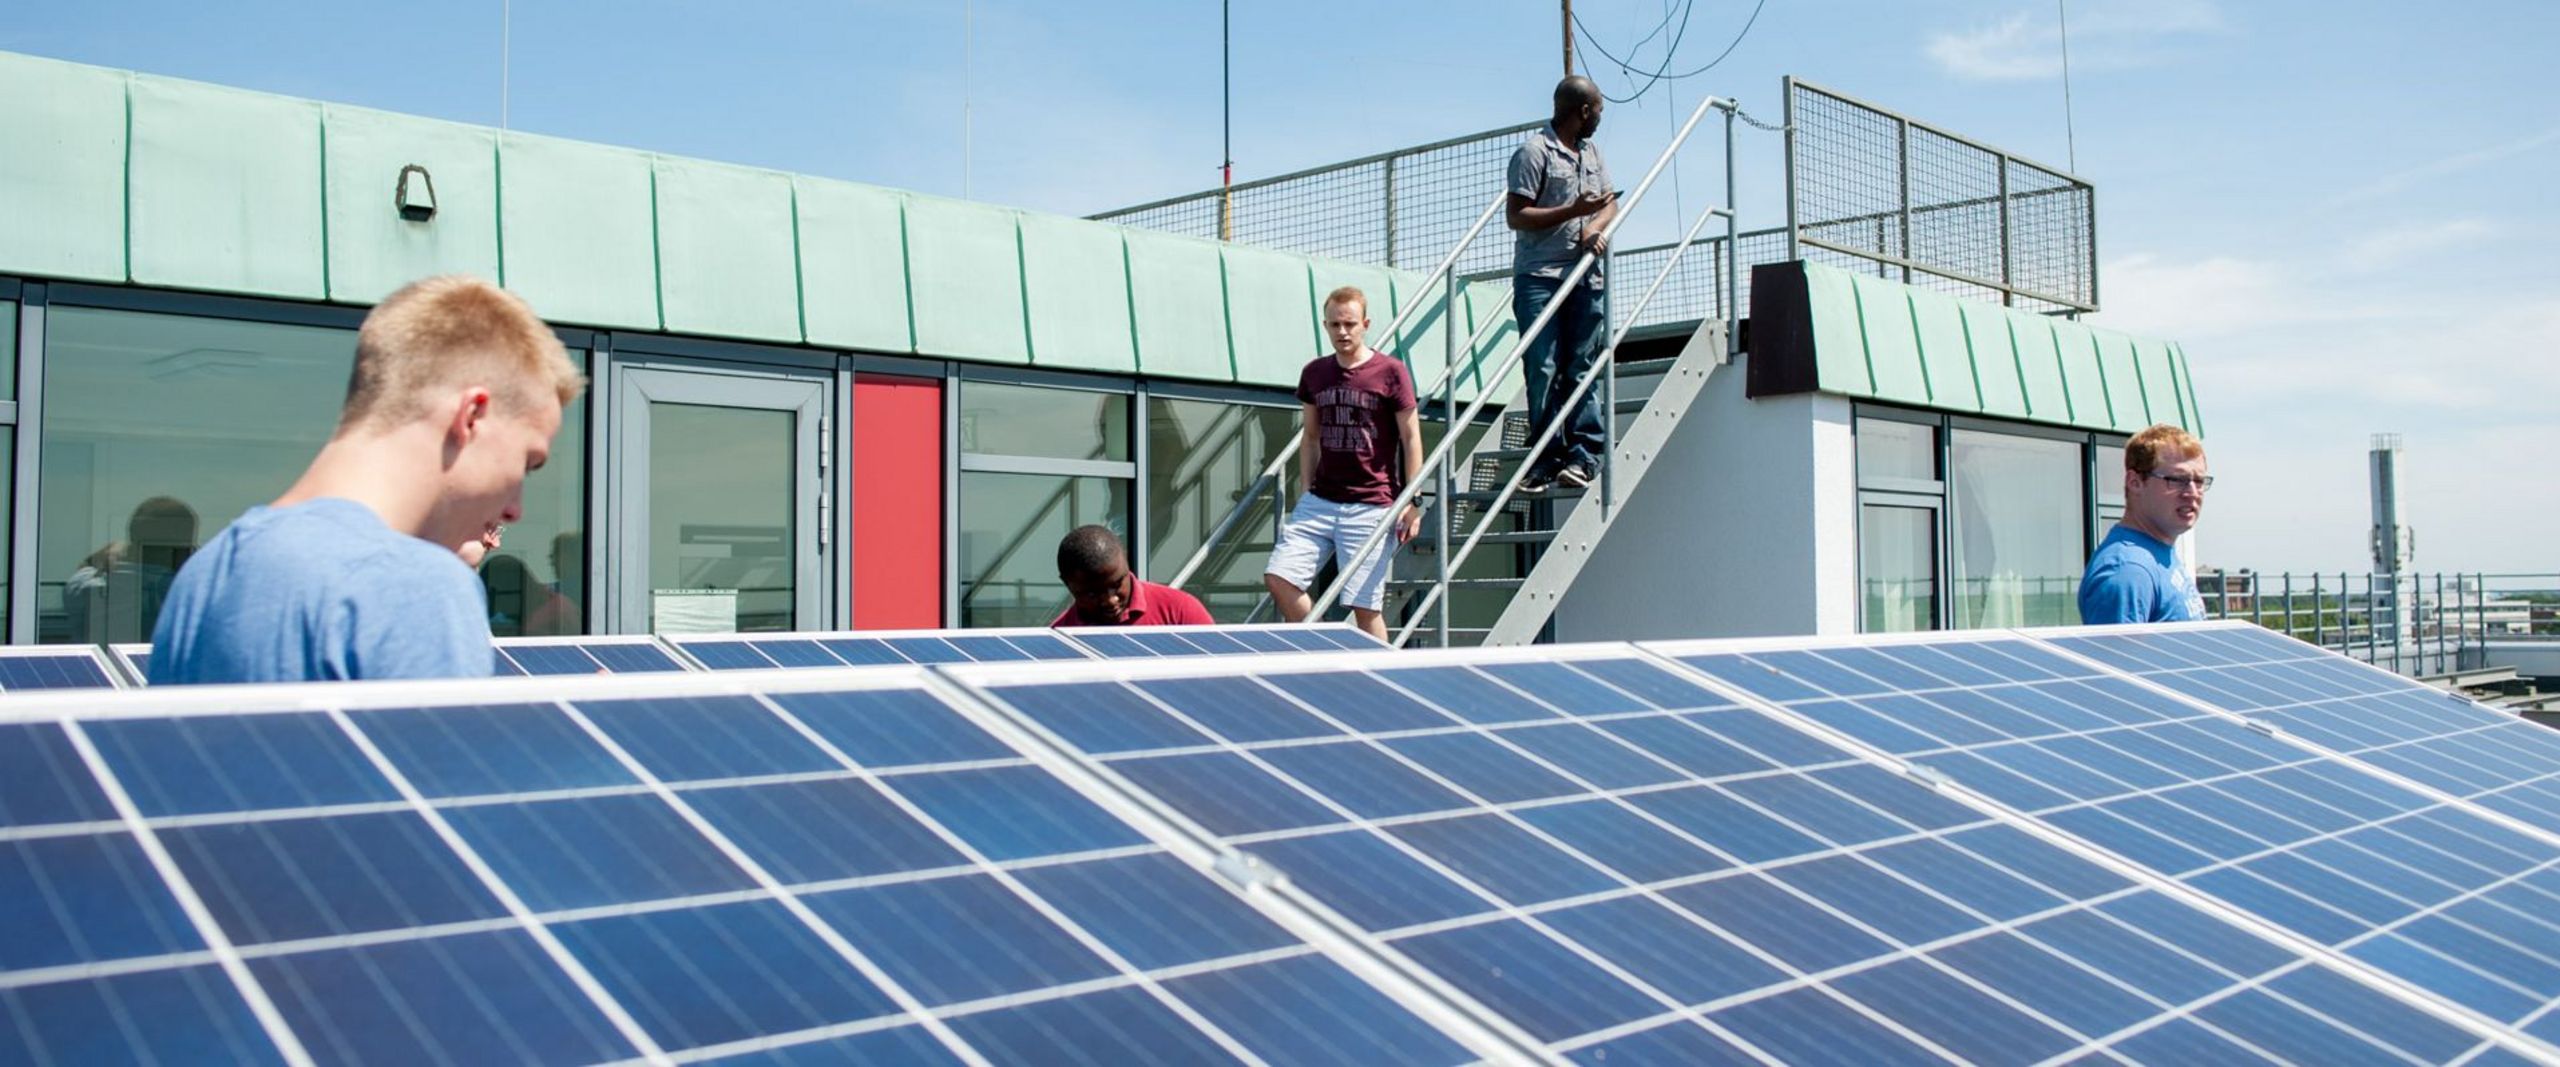 Studierende stehen auf dem Dach eines Gebäudes und betrachten eine Solaranlage.